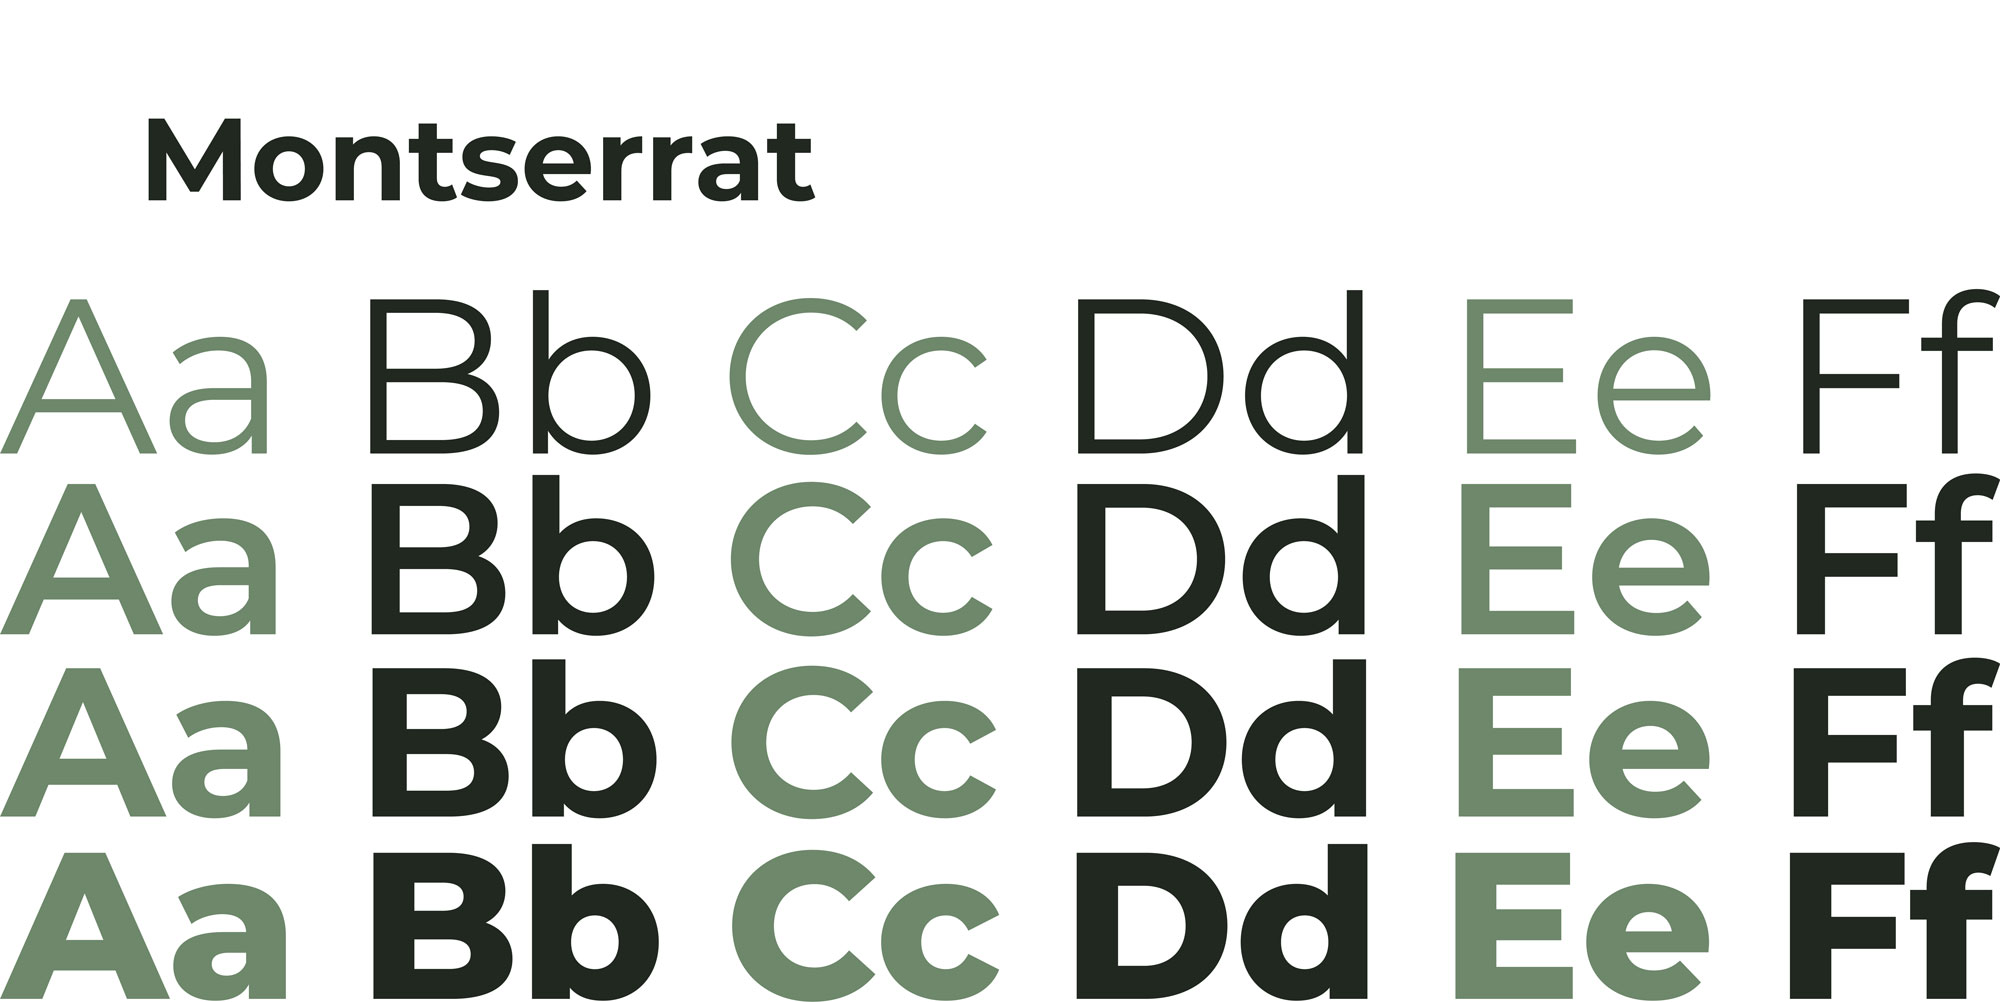 Definizione del font da utilizzare con il Logo e brand identity di Canottieri Outdoor Omegna realizzato da SEBA! grafico di Gravellona Toce nel VCO